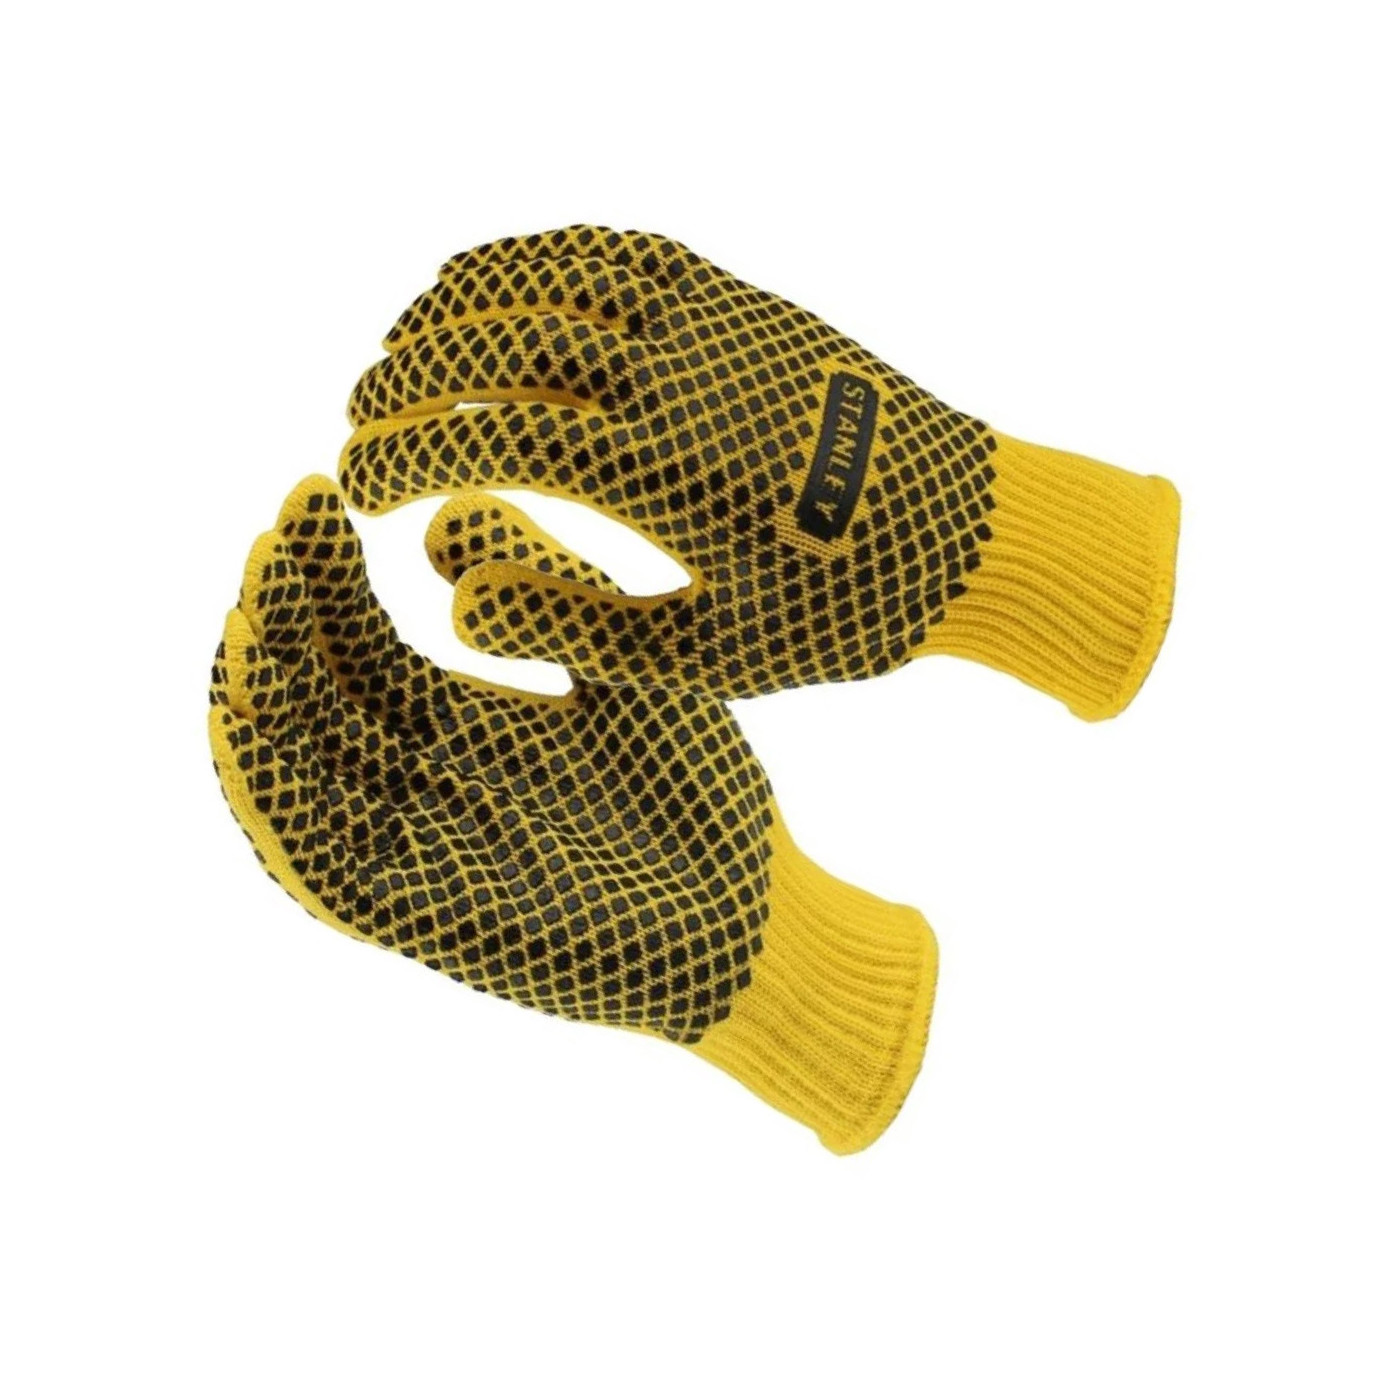 Ensemble de gants de travail Stanley (jaune / noir)